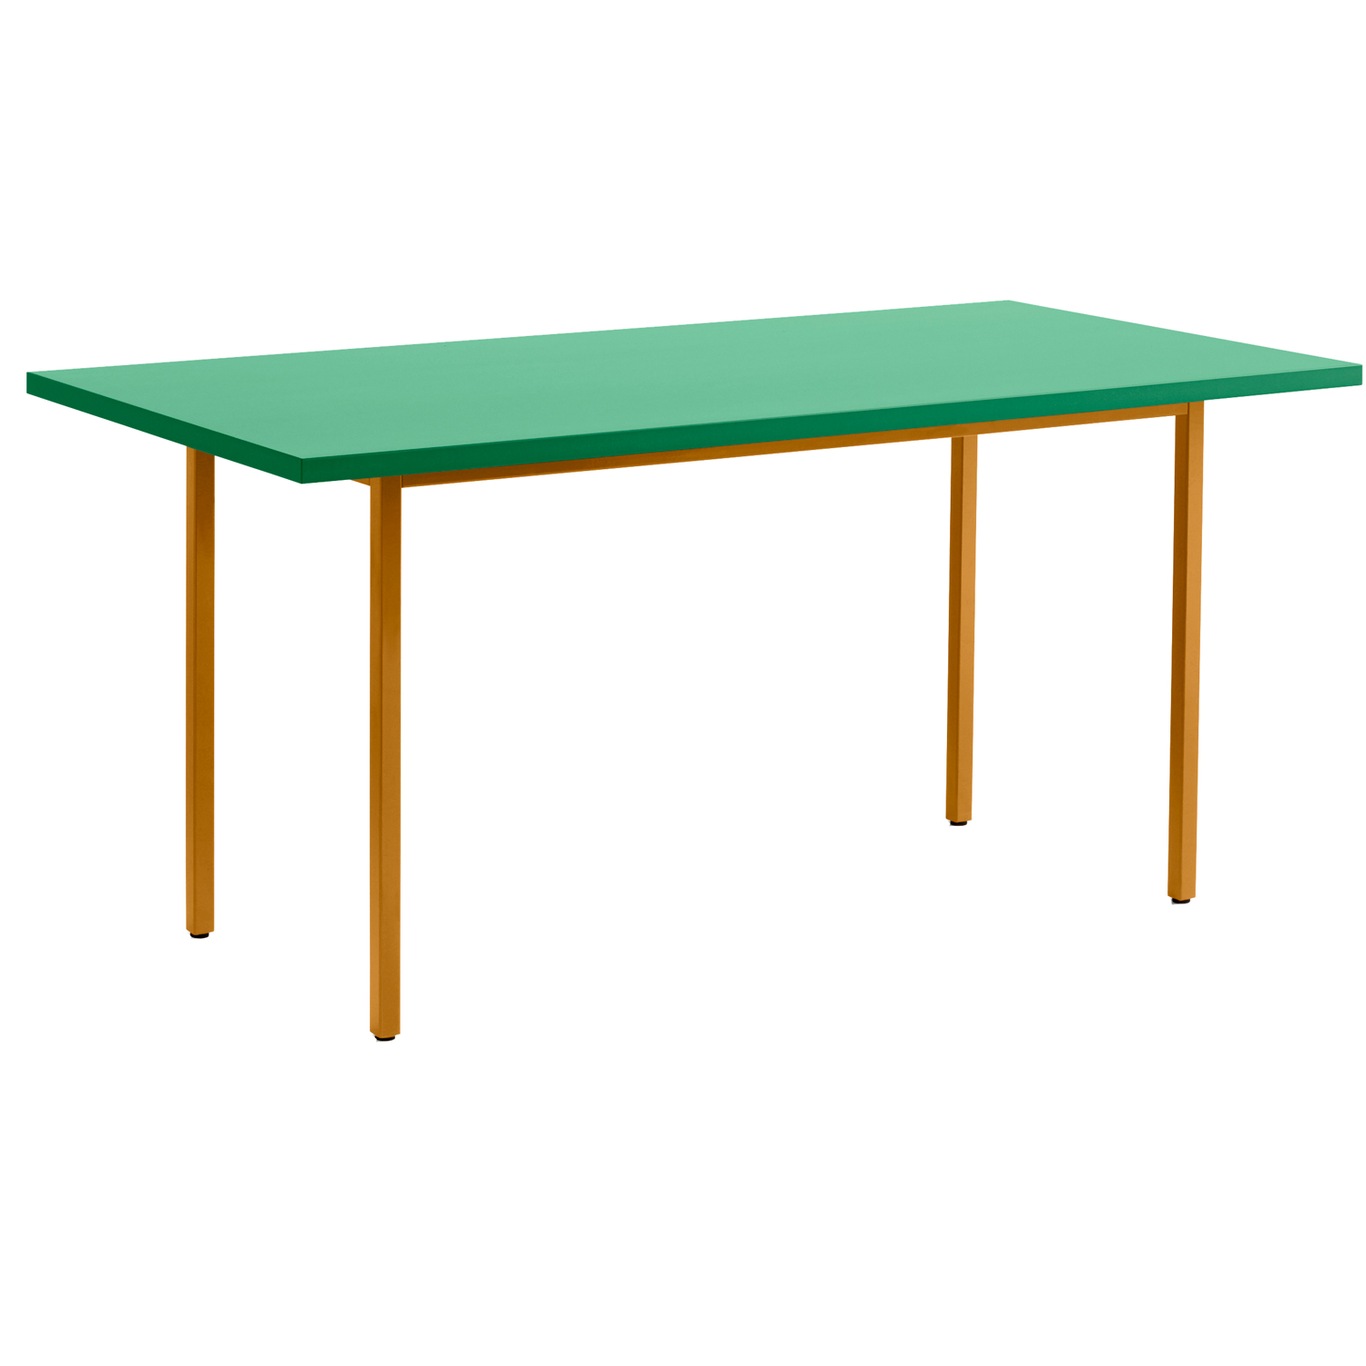 Two-Colour Tisch 160x82 cm, Ocker / Green Mint